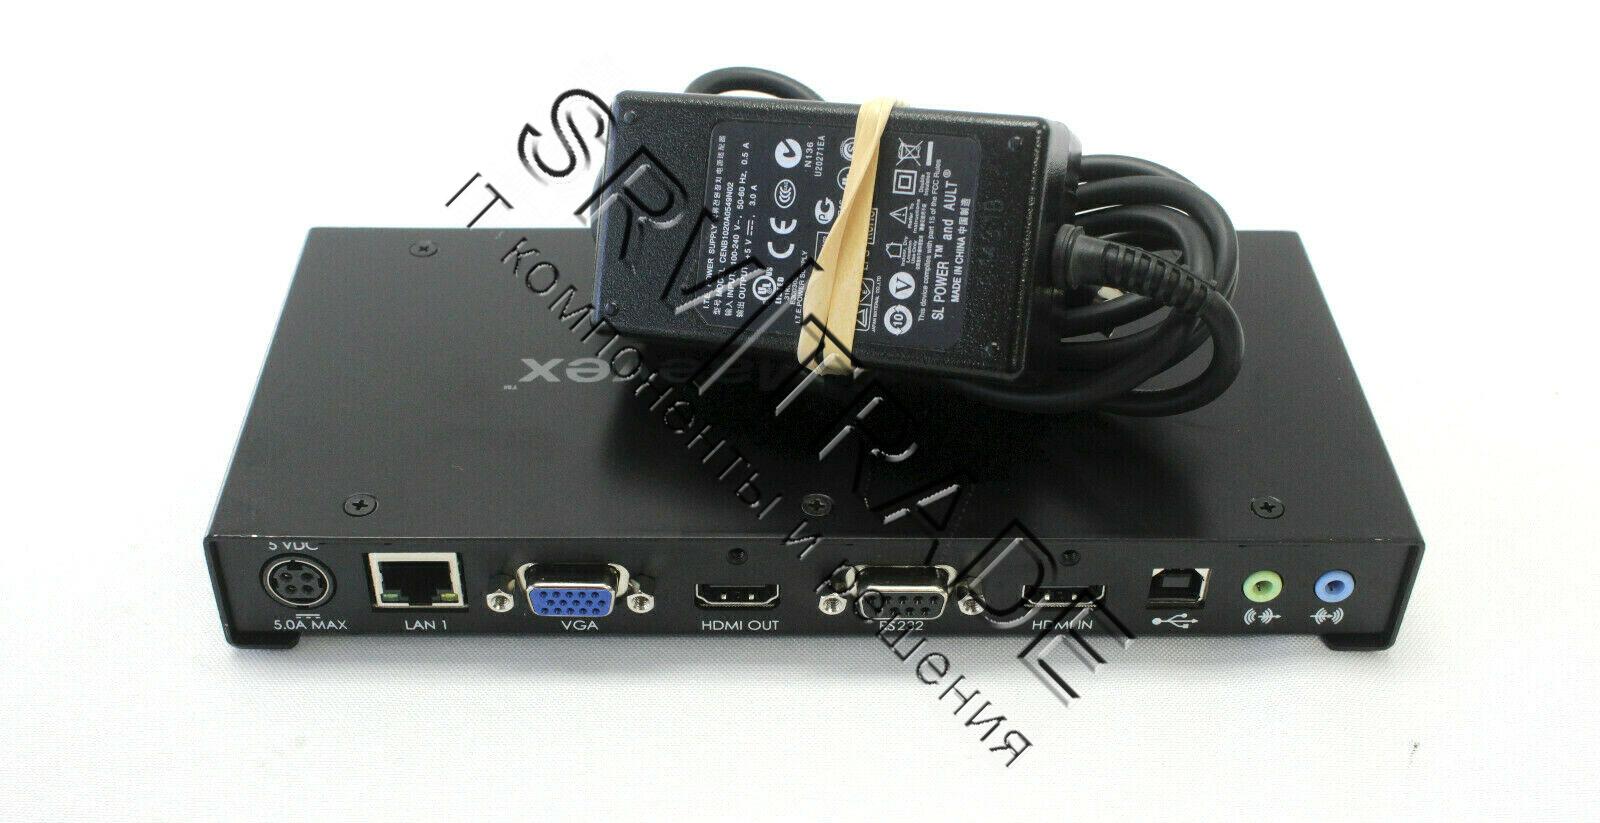 Maevex 5150 Encoder Кодер видео/аудио сигнала Matrox, используюшийся в паре кодер/декодер или как не